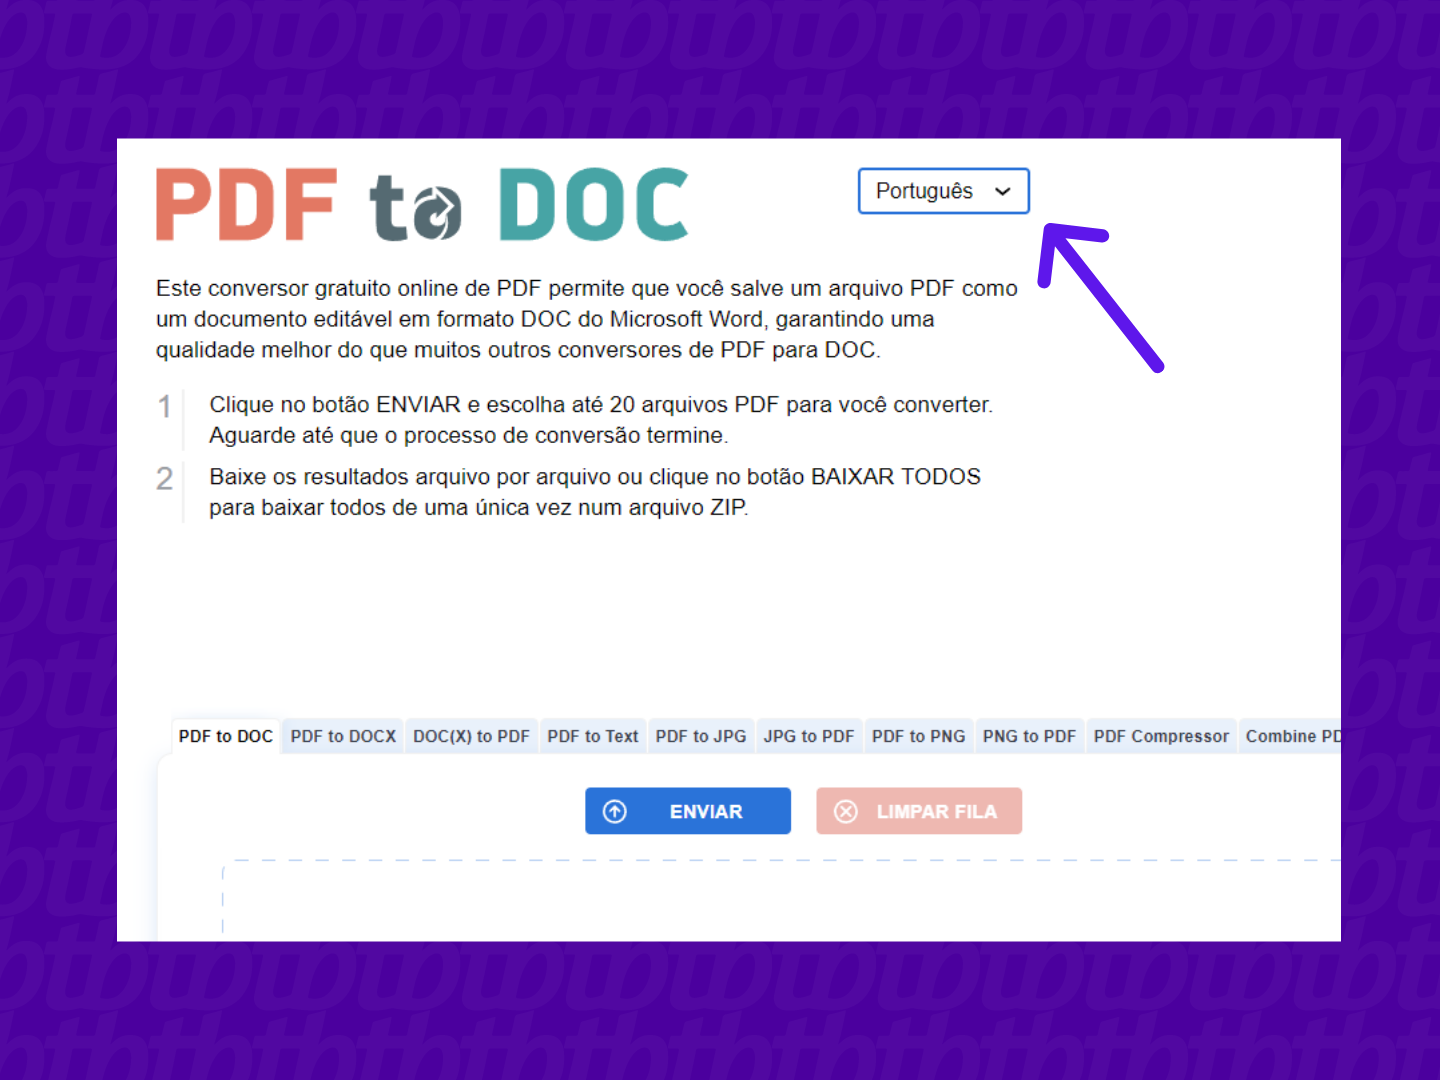 screenshot da pagina inicial do site pdf to doc